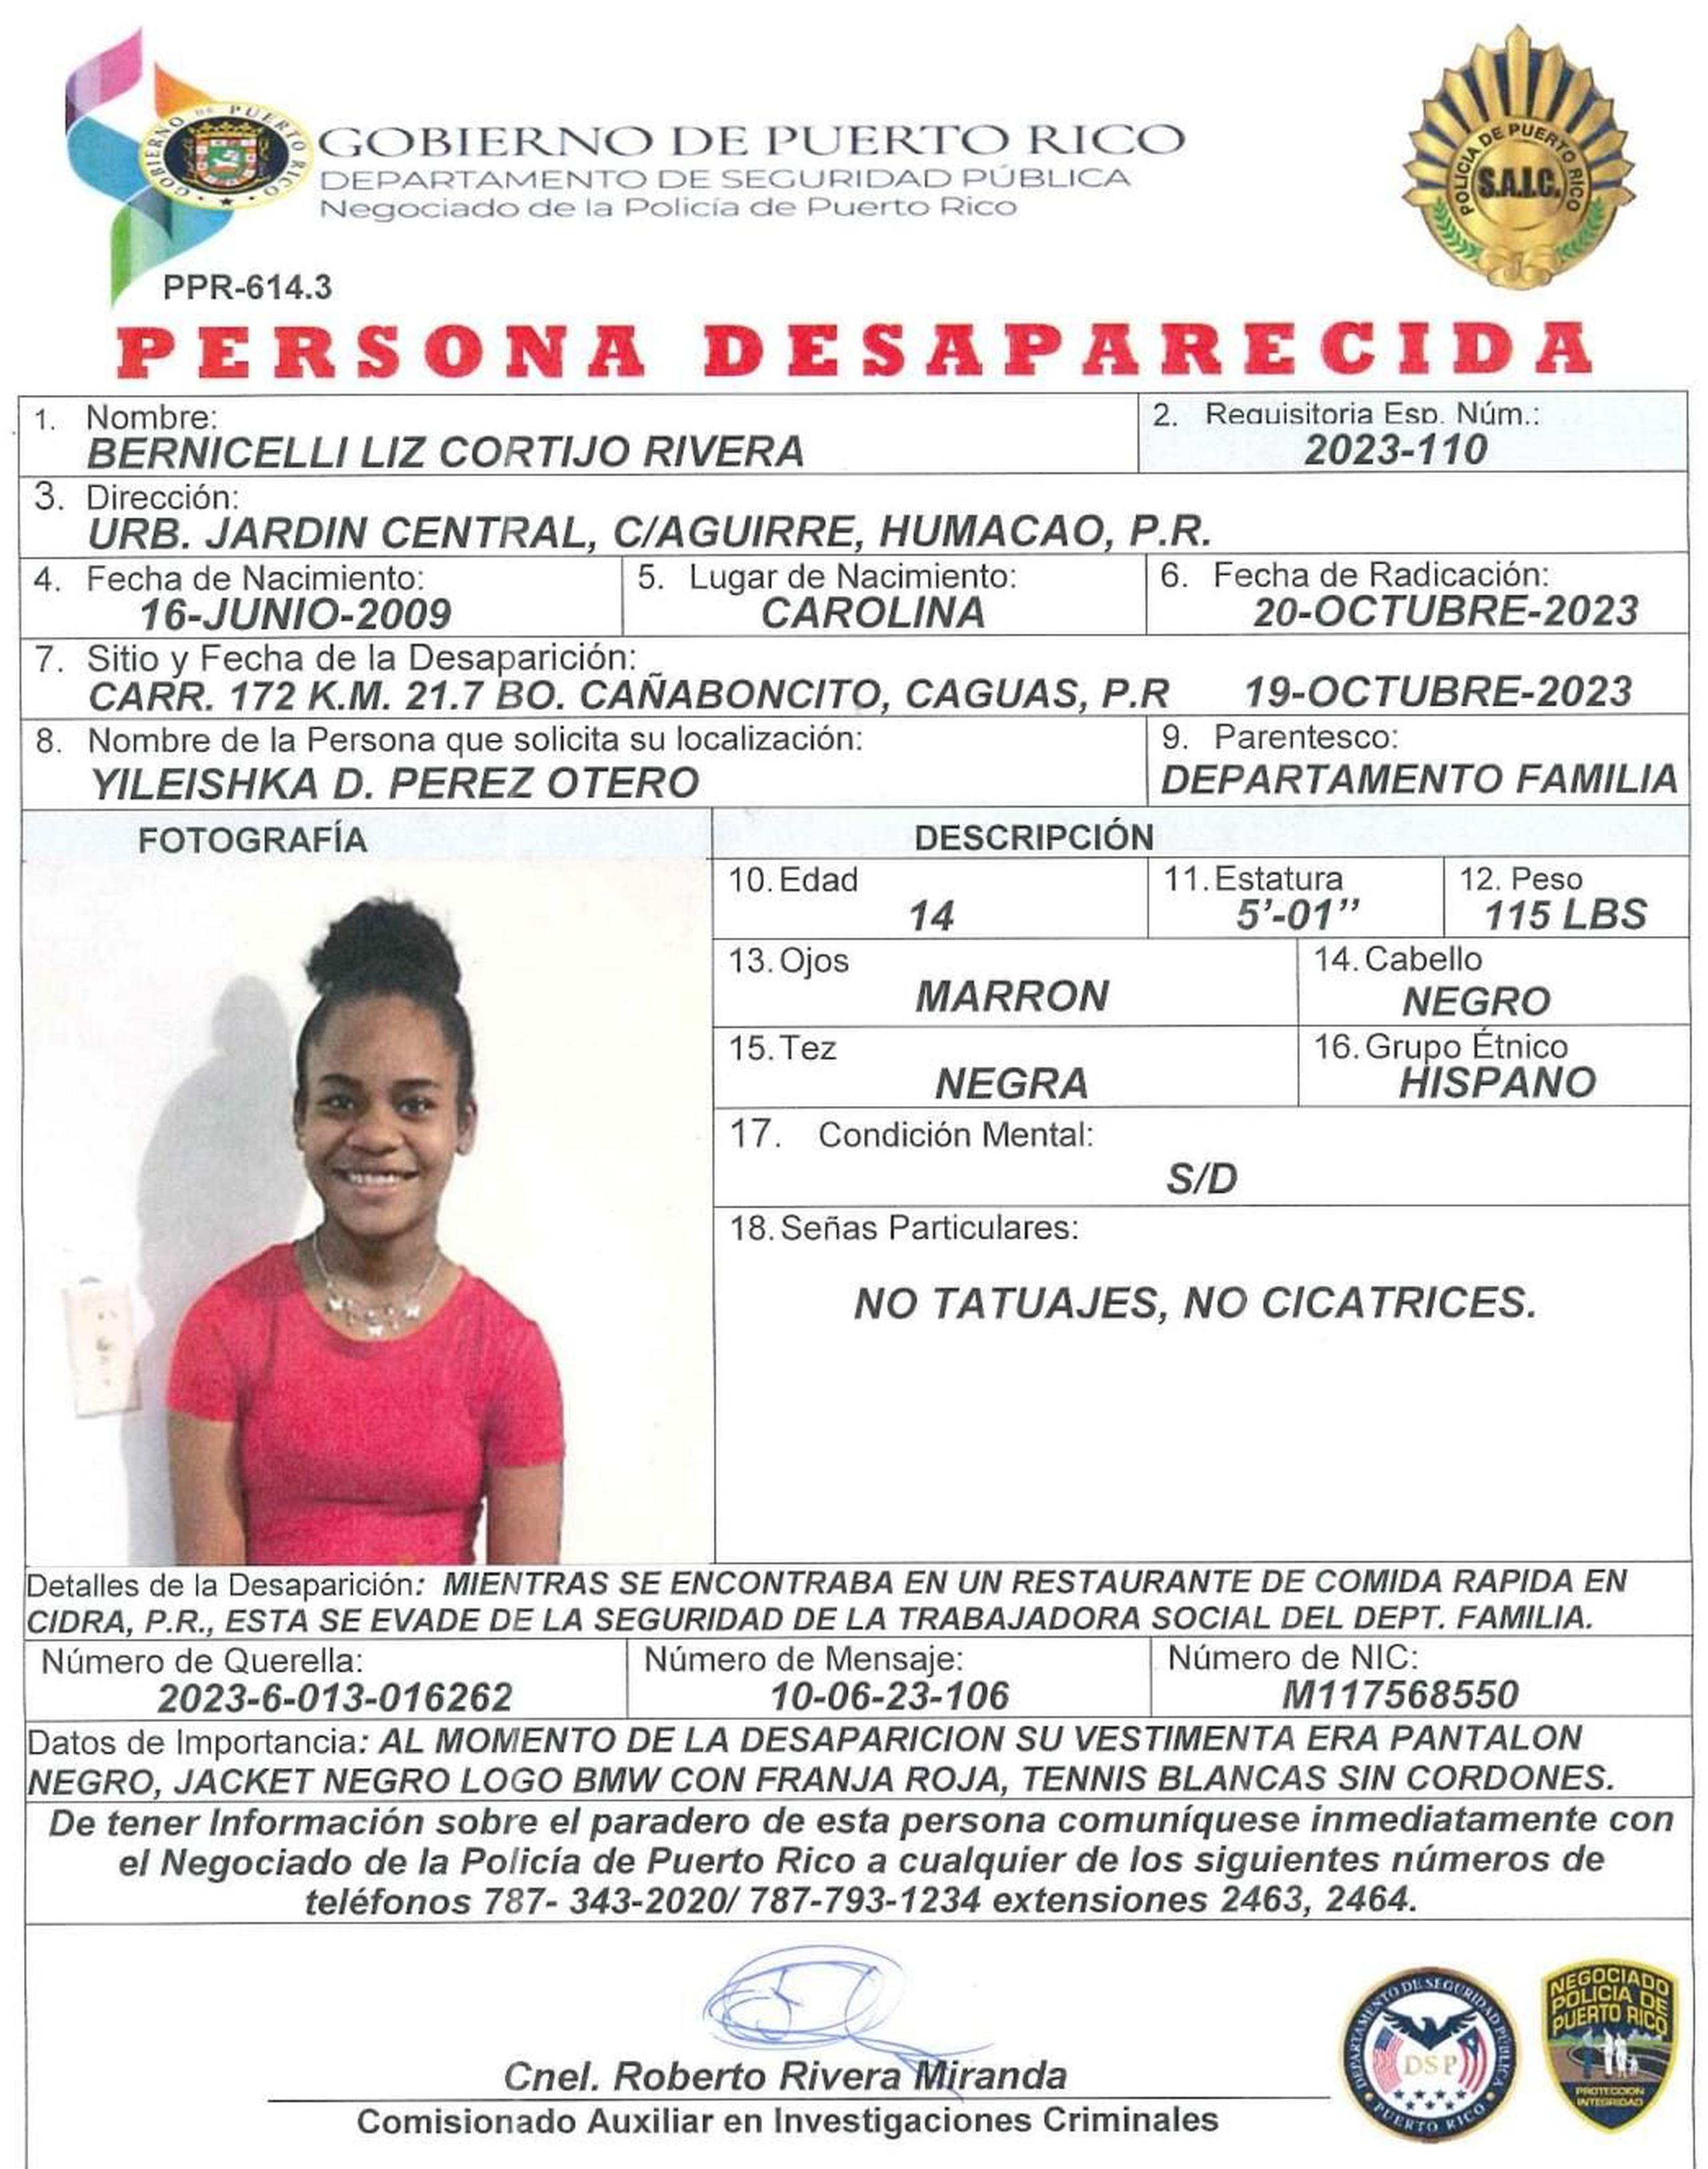 Bernicelli Liz Cortijo Rivera, de 14 años de edad, fue vista por última vez el 19 de octubre, de los predios del barrio Cañaboncito, en Caguas.